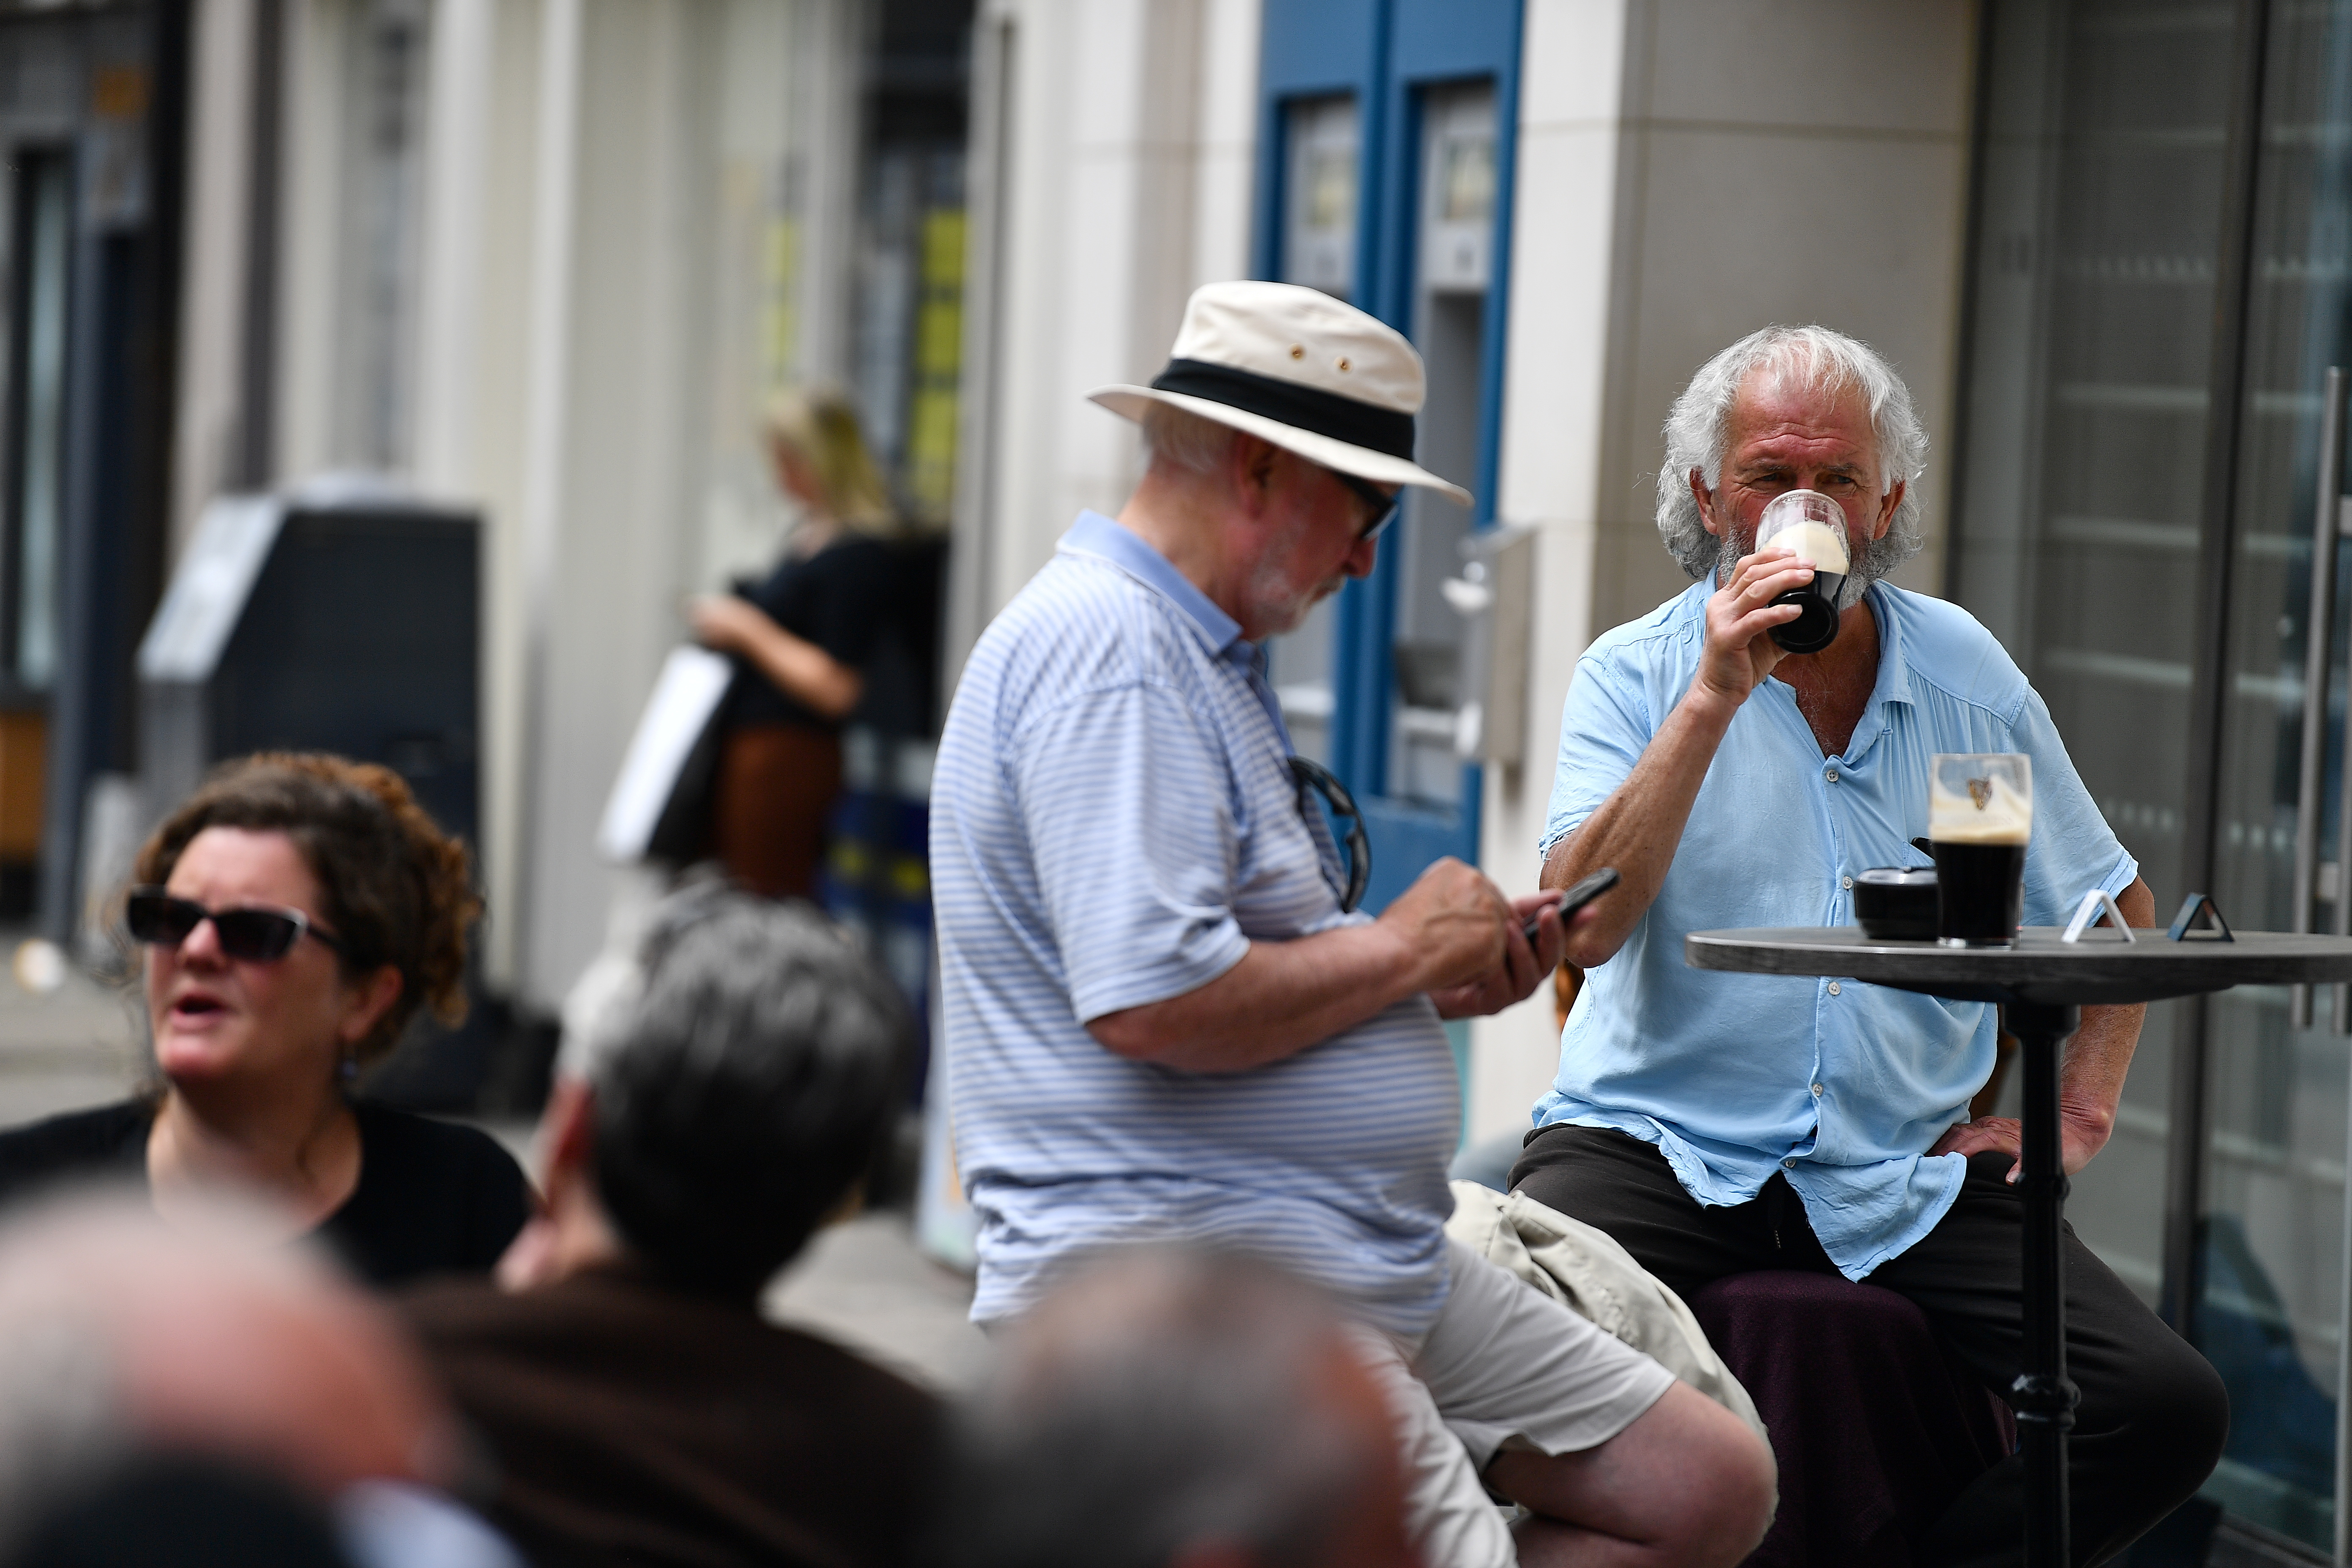 Les gens apprécient les repas en plein air alors que les services en plein air dans les restaurants et les bars recommencent en Irlande alors que les restrictions s'assouplissent à la suite de l'épidémie de maladie à coronavirus (COVID-19), à Galway, en Irlande, le 7 juin 2021. REUTERS / Clodagh Kilcoyne